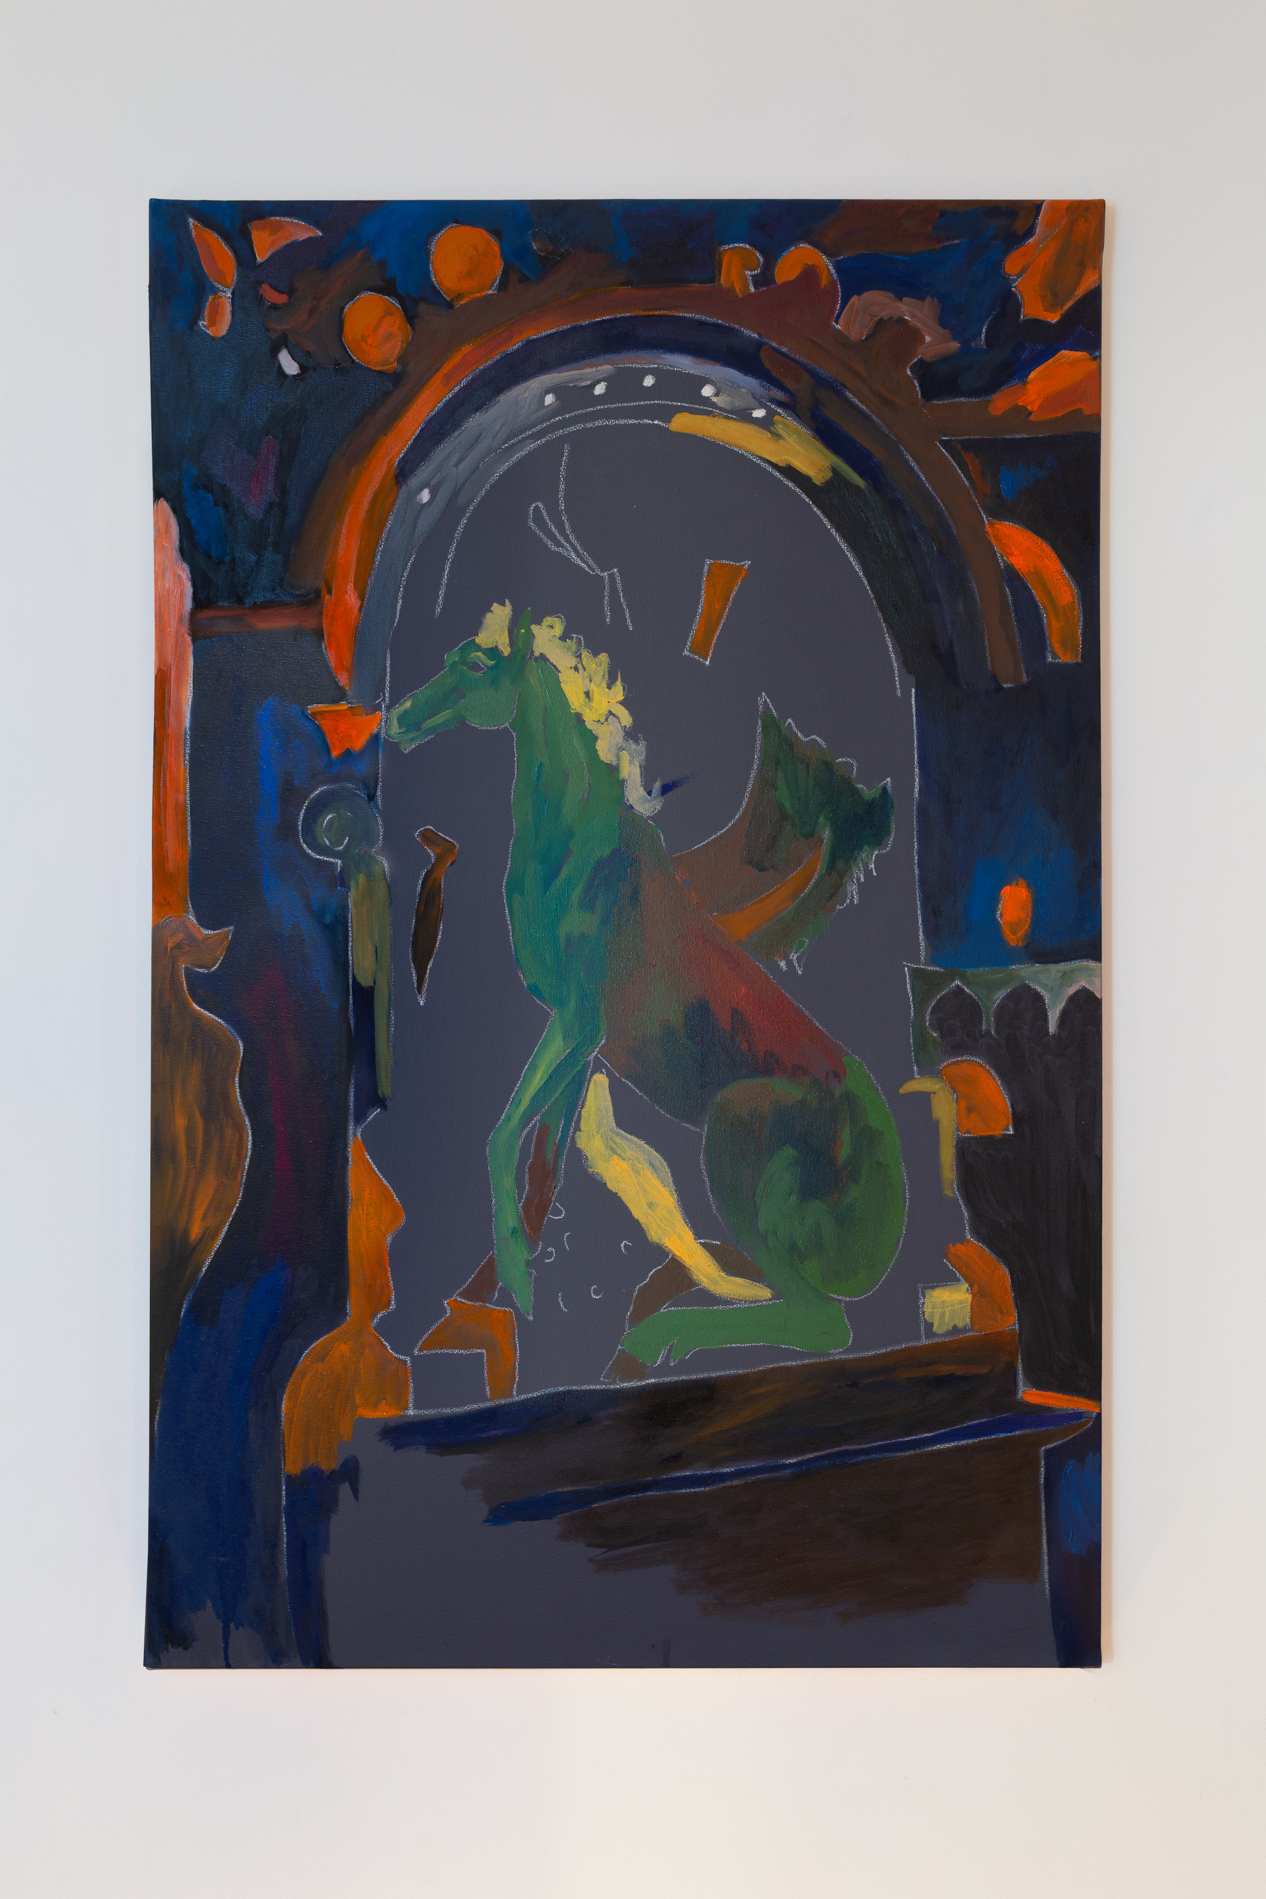 Lauren Coullard, Coal Mine, oil painting, 100x65cm, 2020